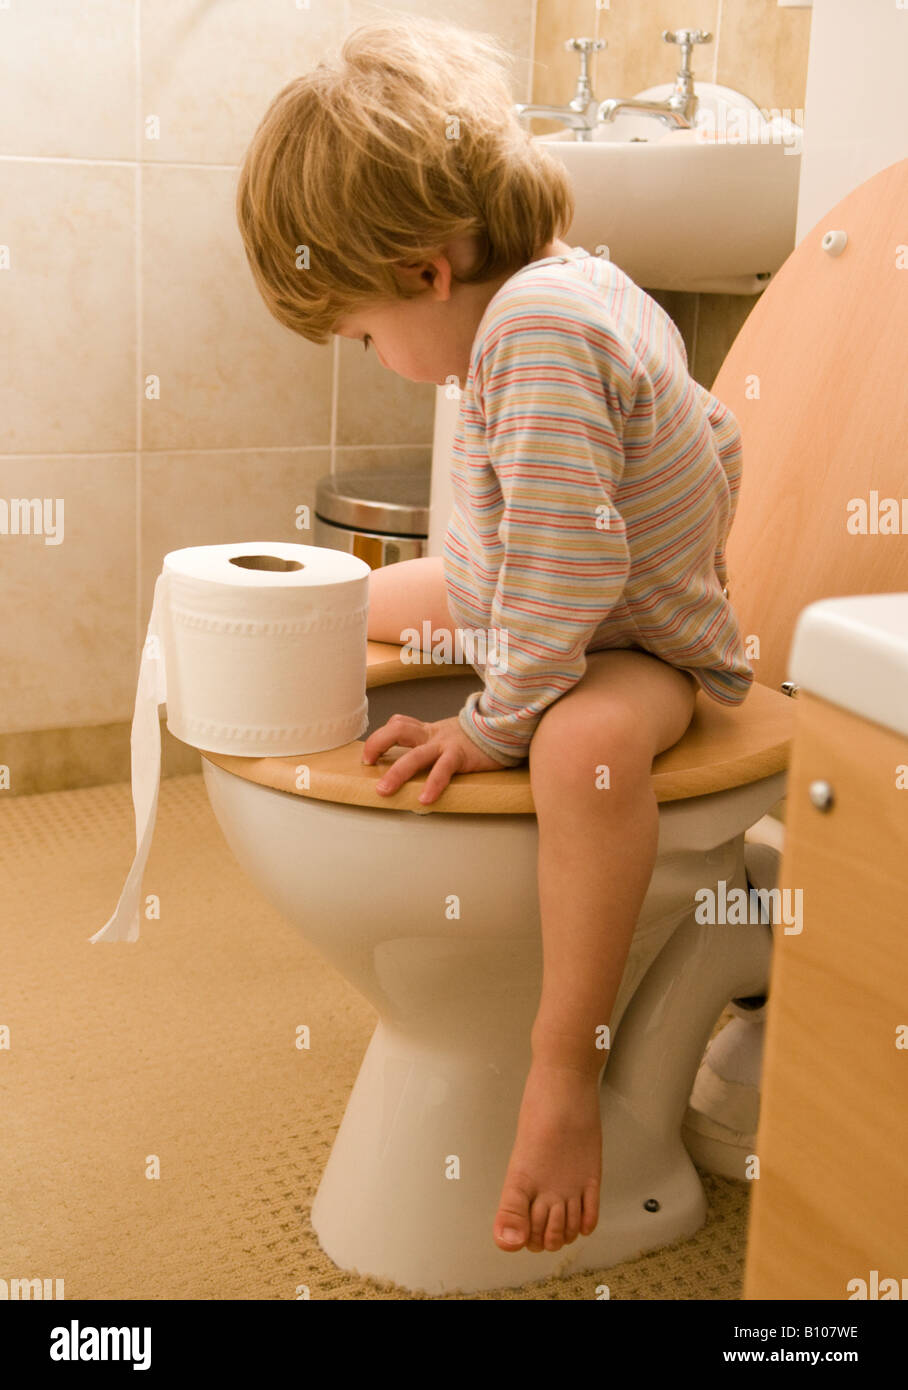 Kleines Kind, Junge, lernt, die Toilette zu benutzen, Klo, sitzt auf dem Sitz und hält eine Papierrolle, 27 Monate alt Stockfoto